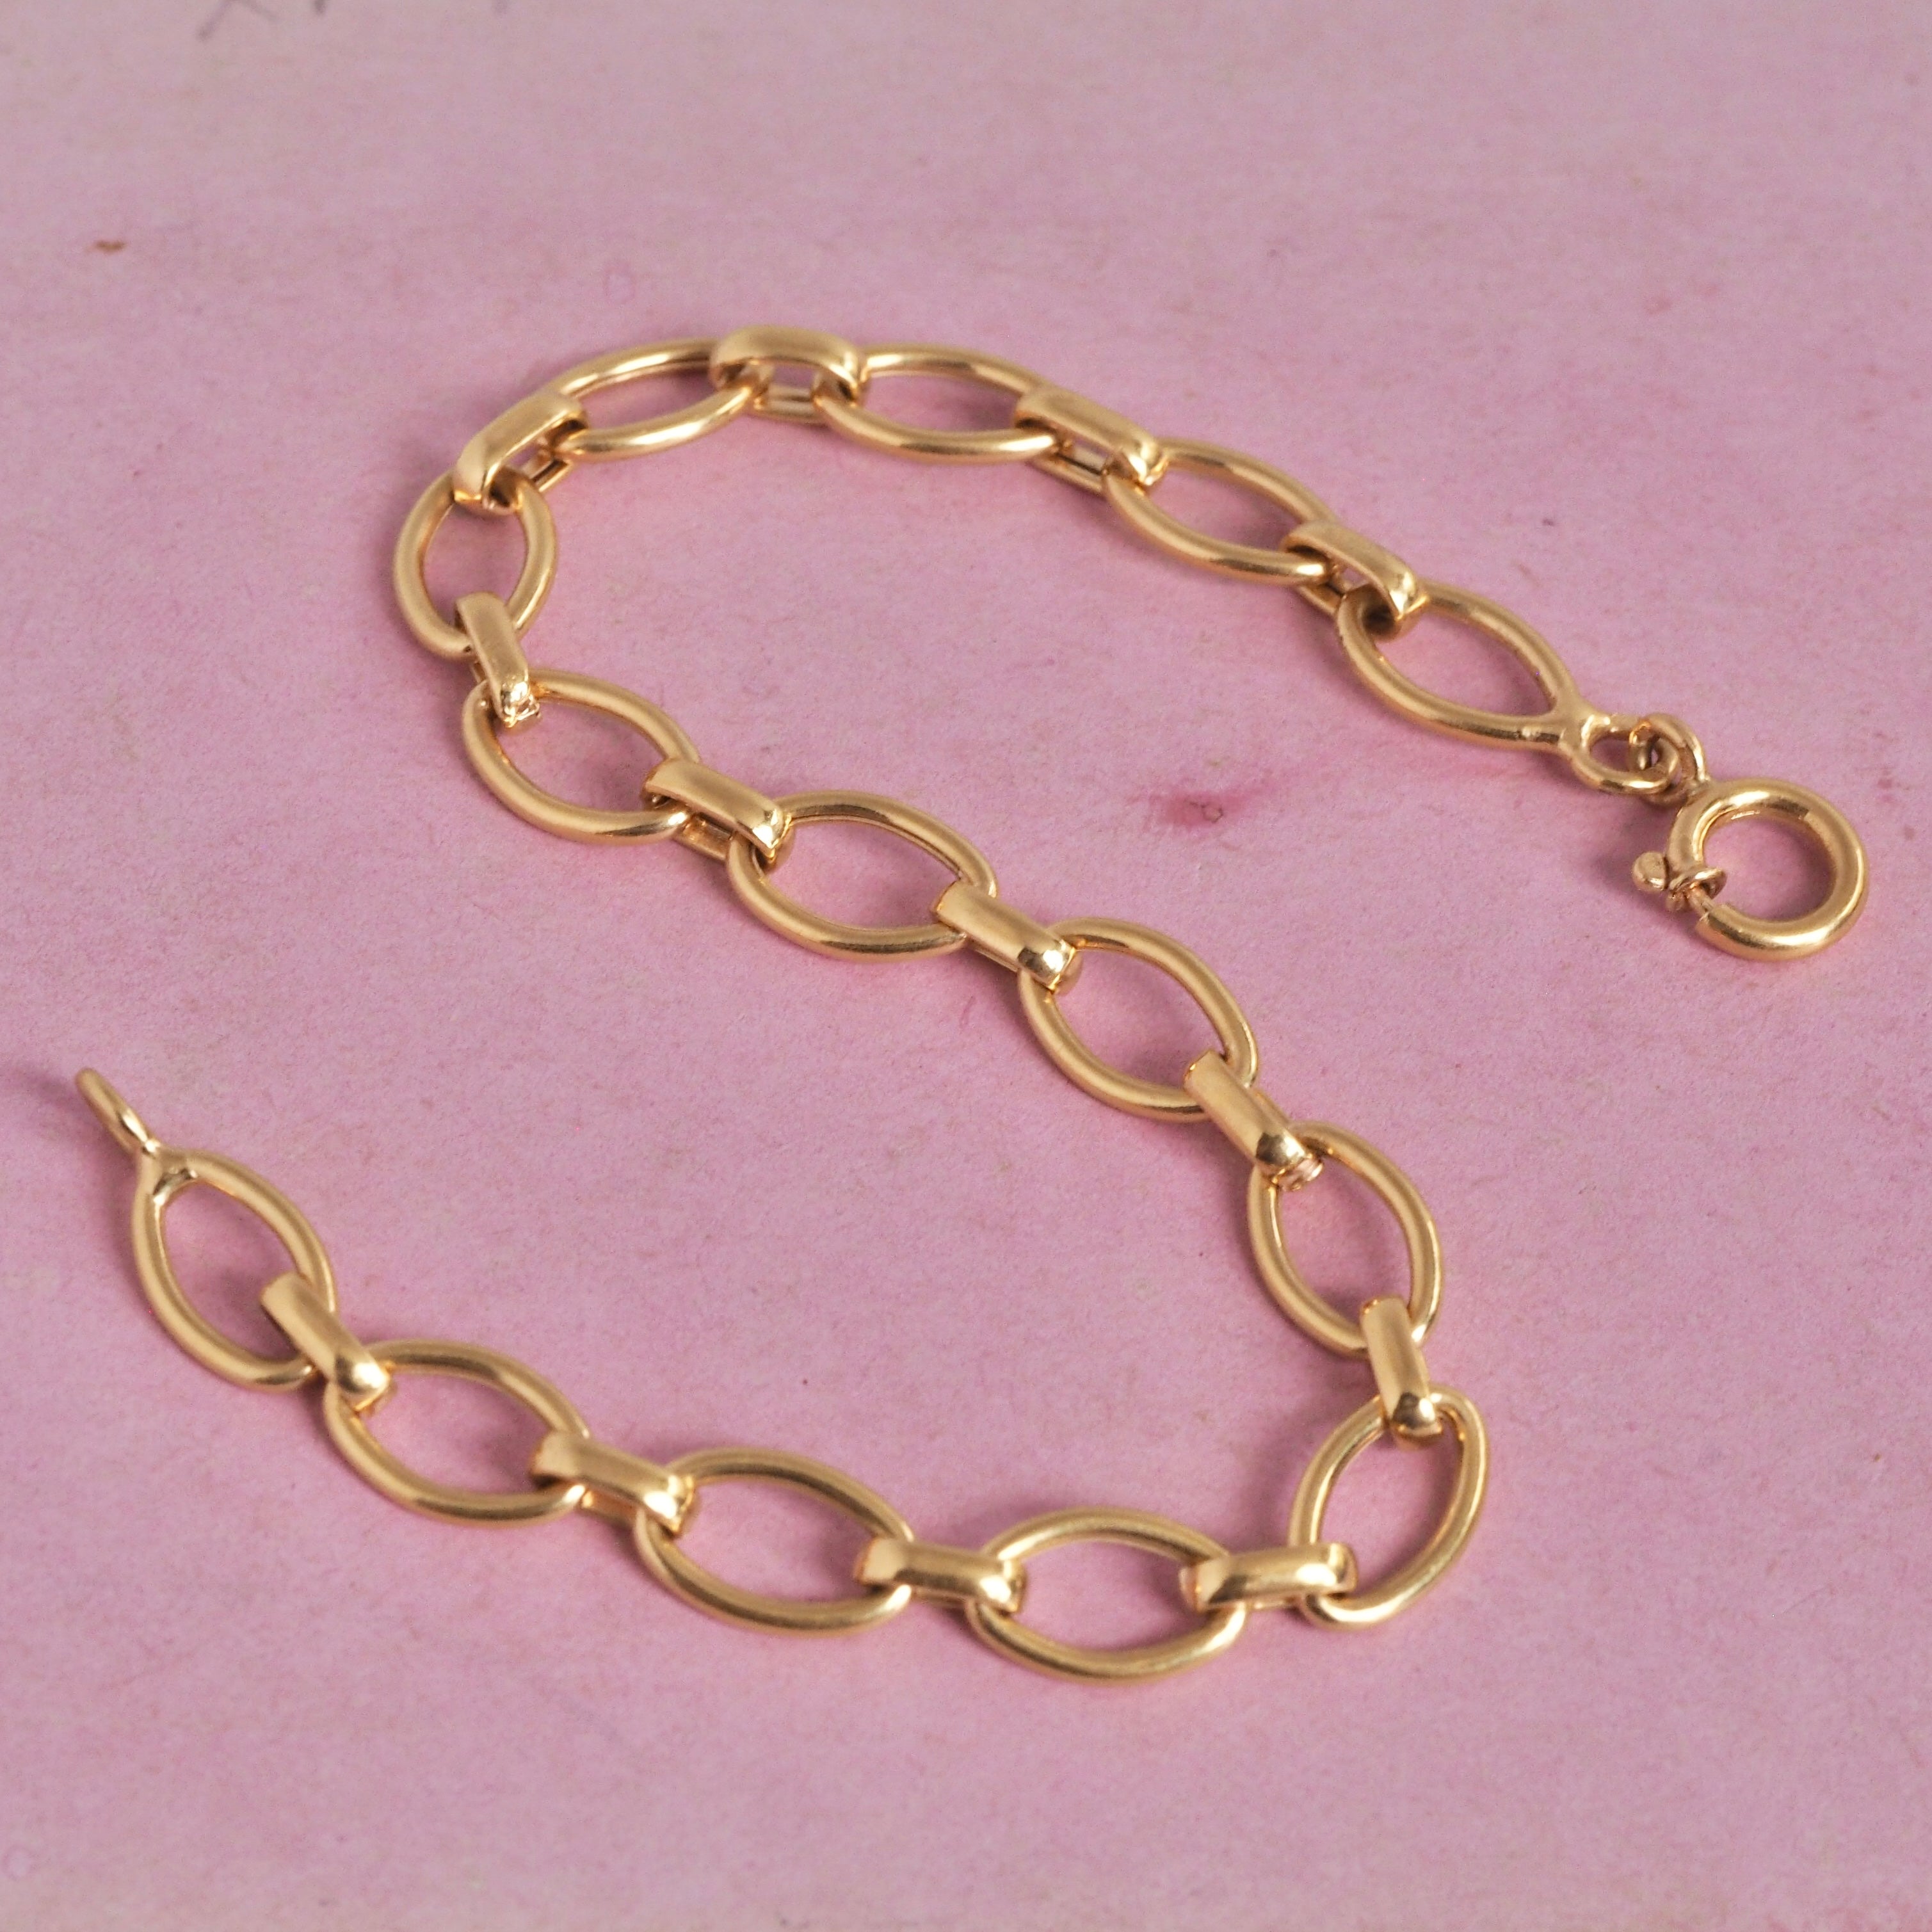 Vintage Portuguese 19k Gold Oval Link Chain Bracelet